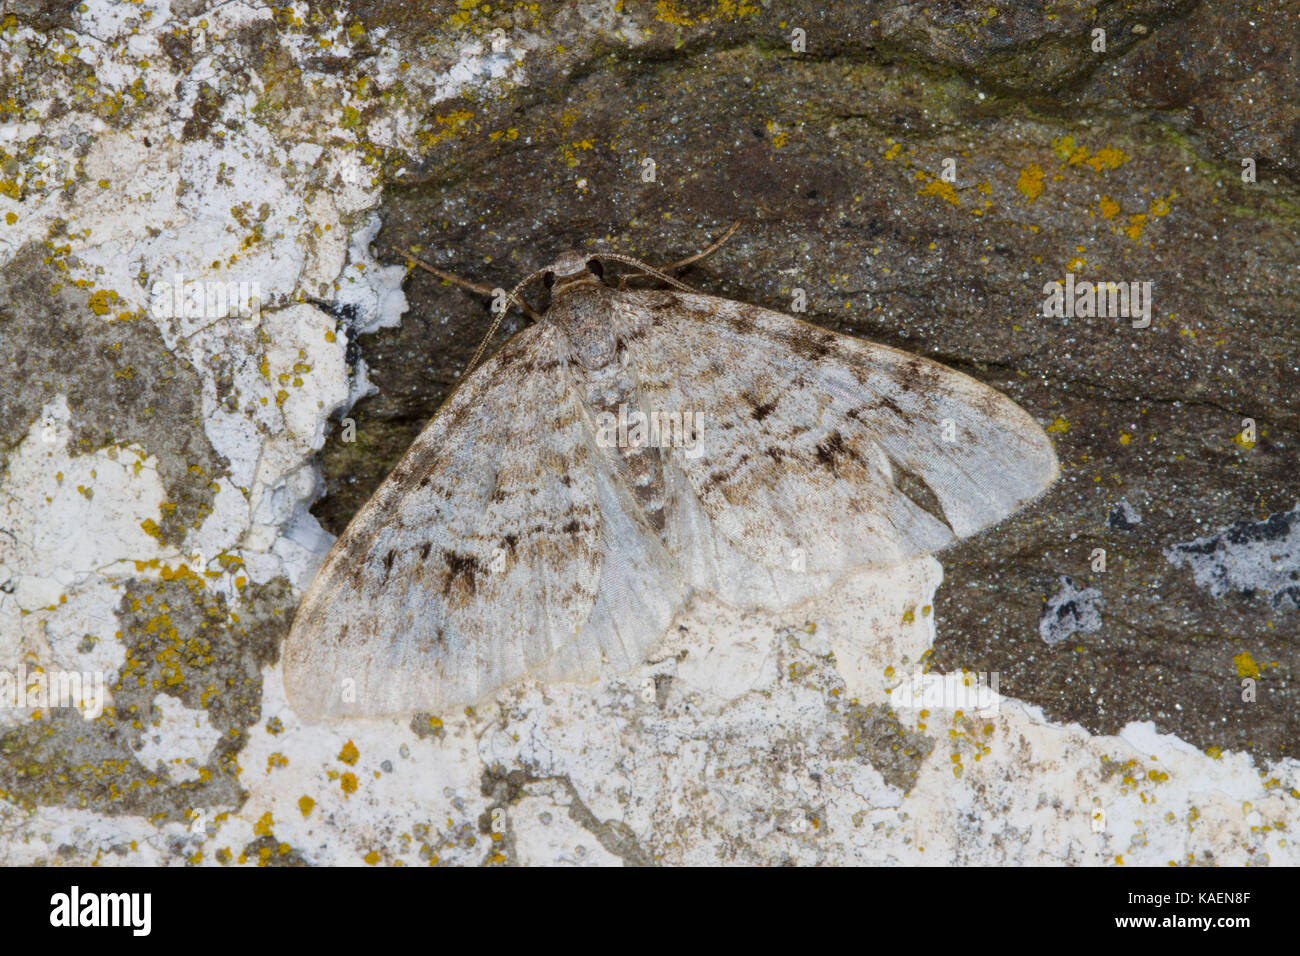 Vague gallois (Salon Venusia cambrica) papillon adulte reposant sur un mur. Powys, Pays de Galles. Juillet. Banque D'Images